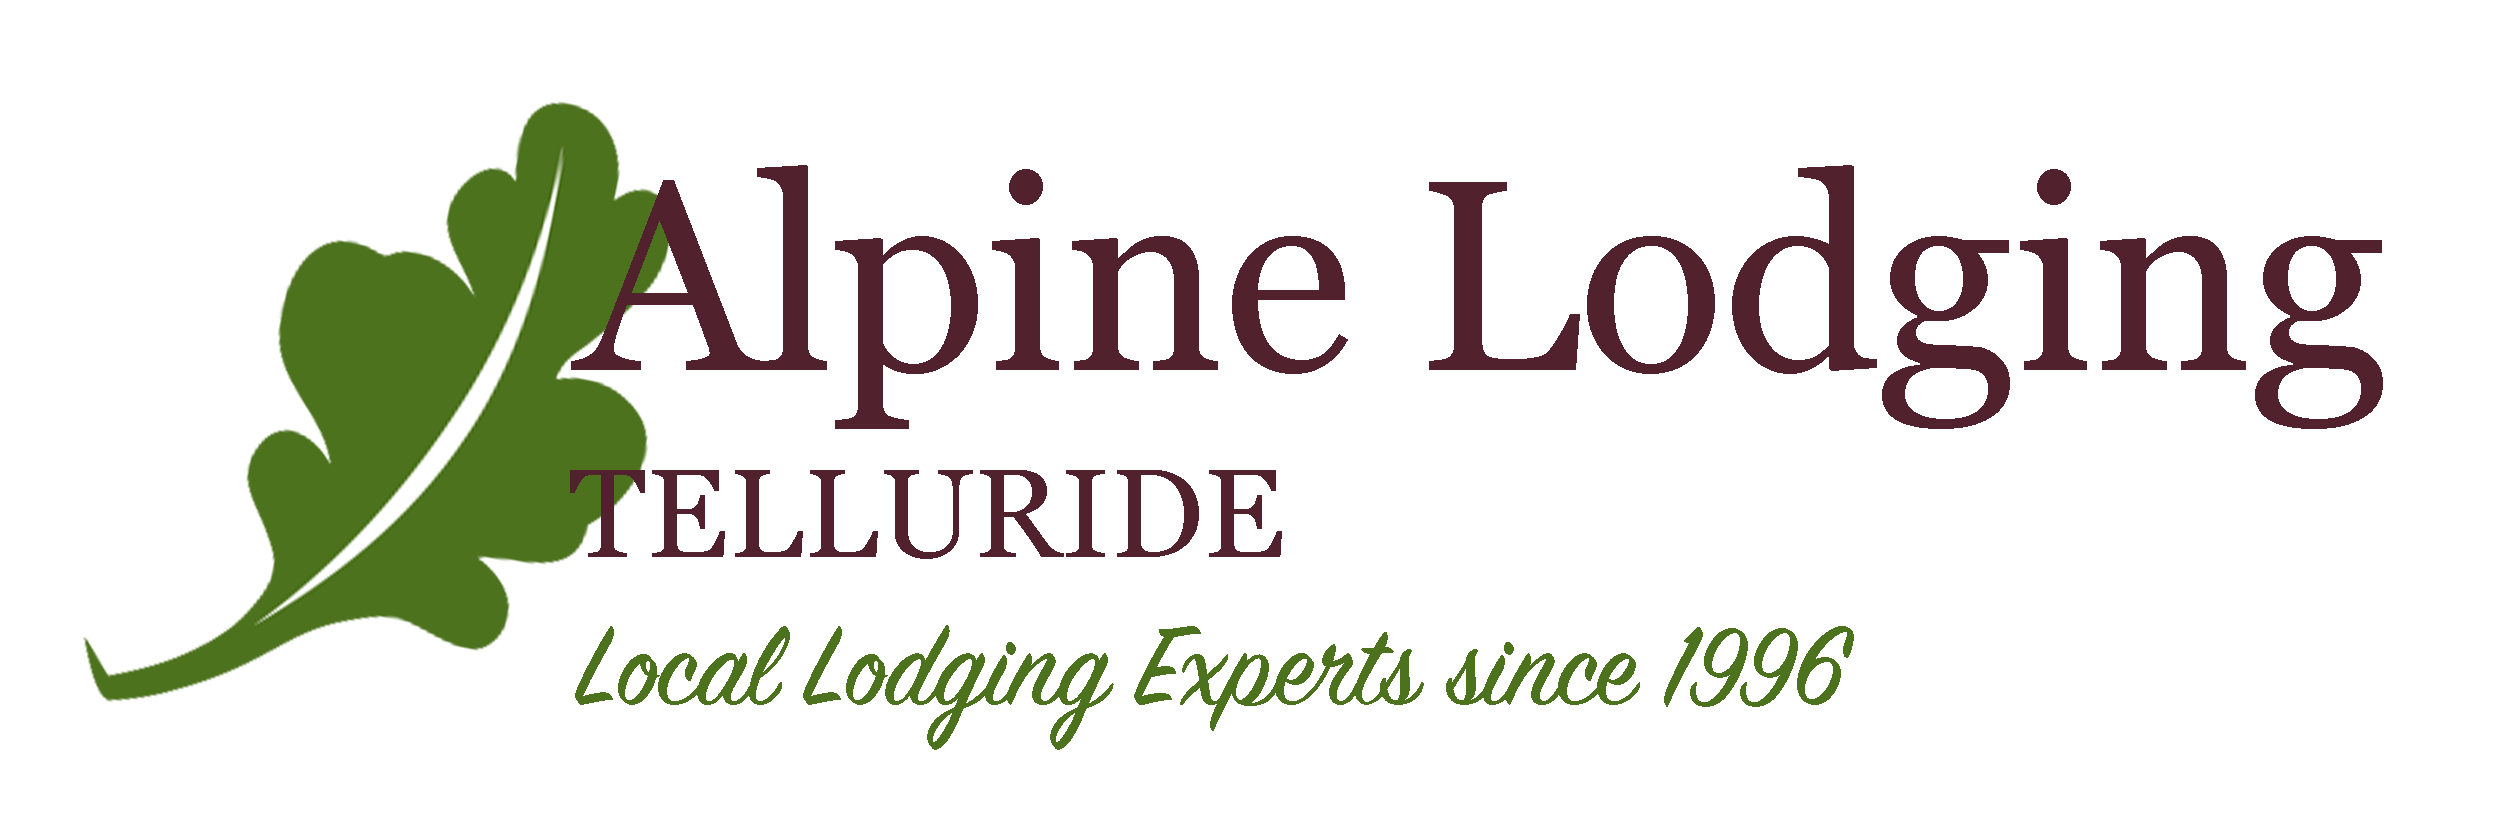 Alpine Lodging Telluride